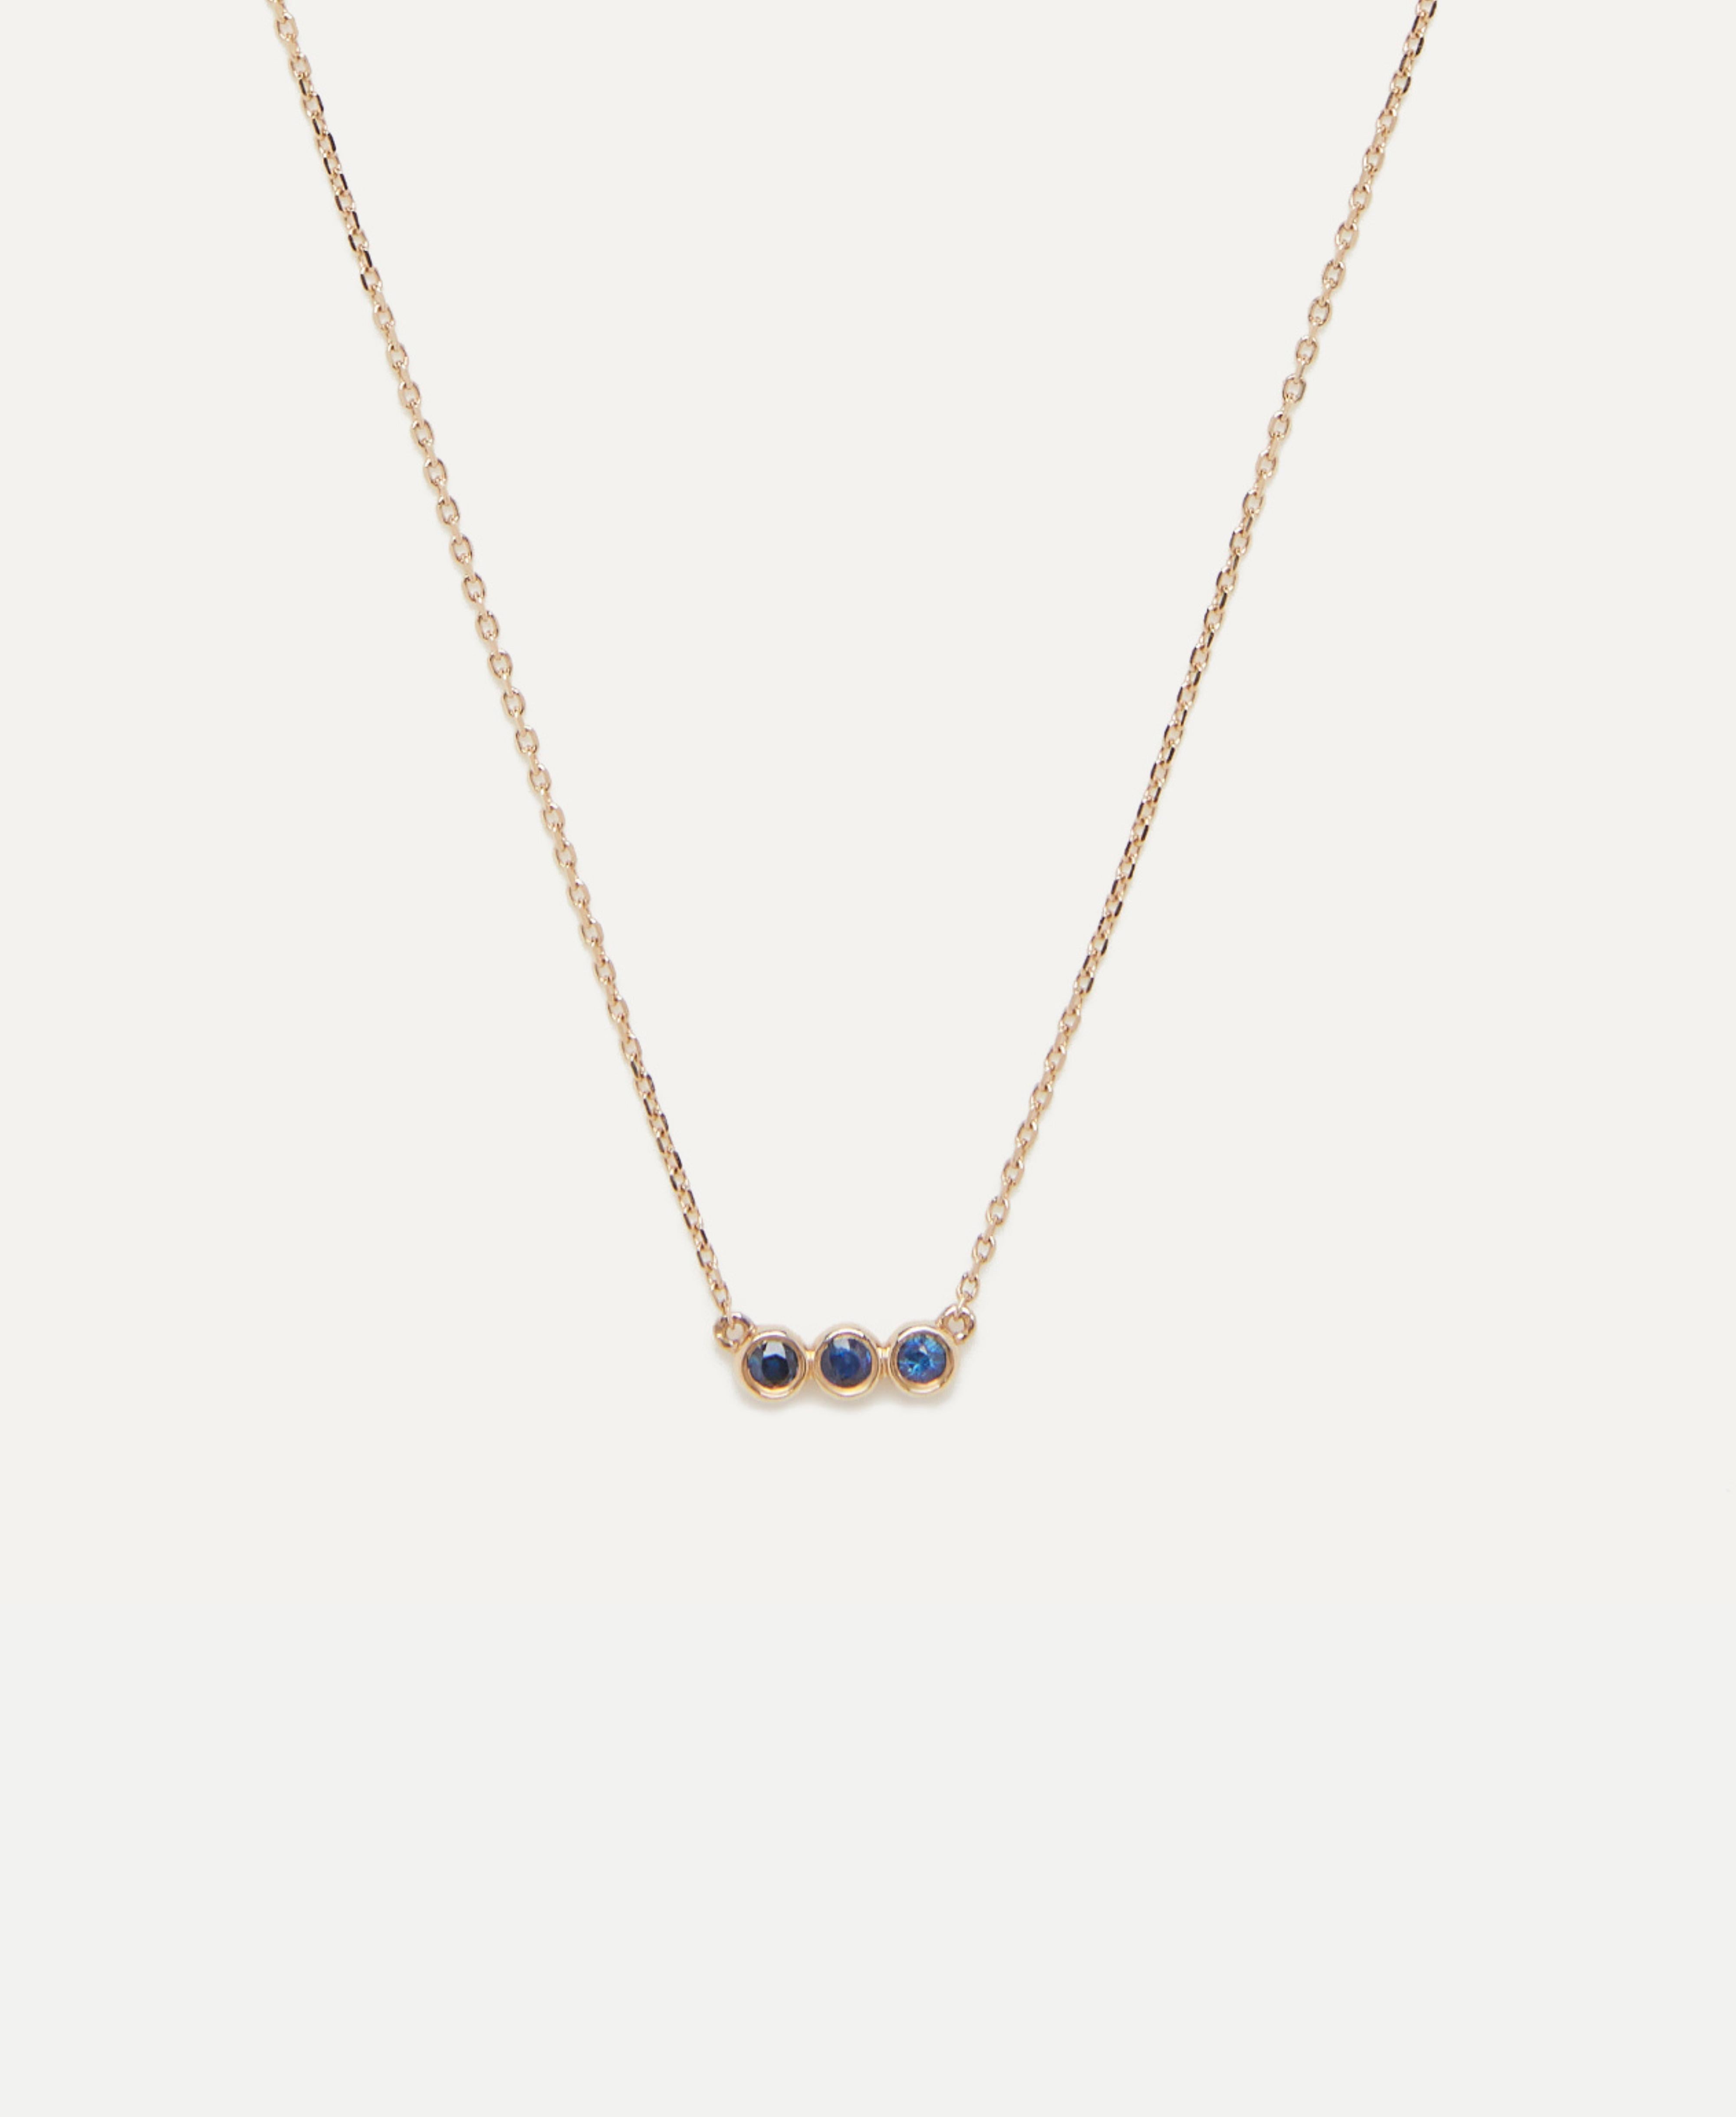 Ein Saphir Trio Anhänger Halskette ist ein Symbol für zeitlose Schönheit und sentimentale Bedeutung. Diese Halskette besteht aus einem zarten Anhänger, der mit drei bezaubernden, tiefblauen Saphiren geschmückt ist. Das Trio aus Saphiren